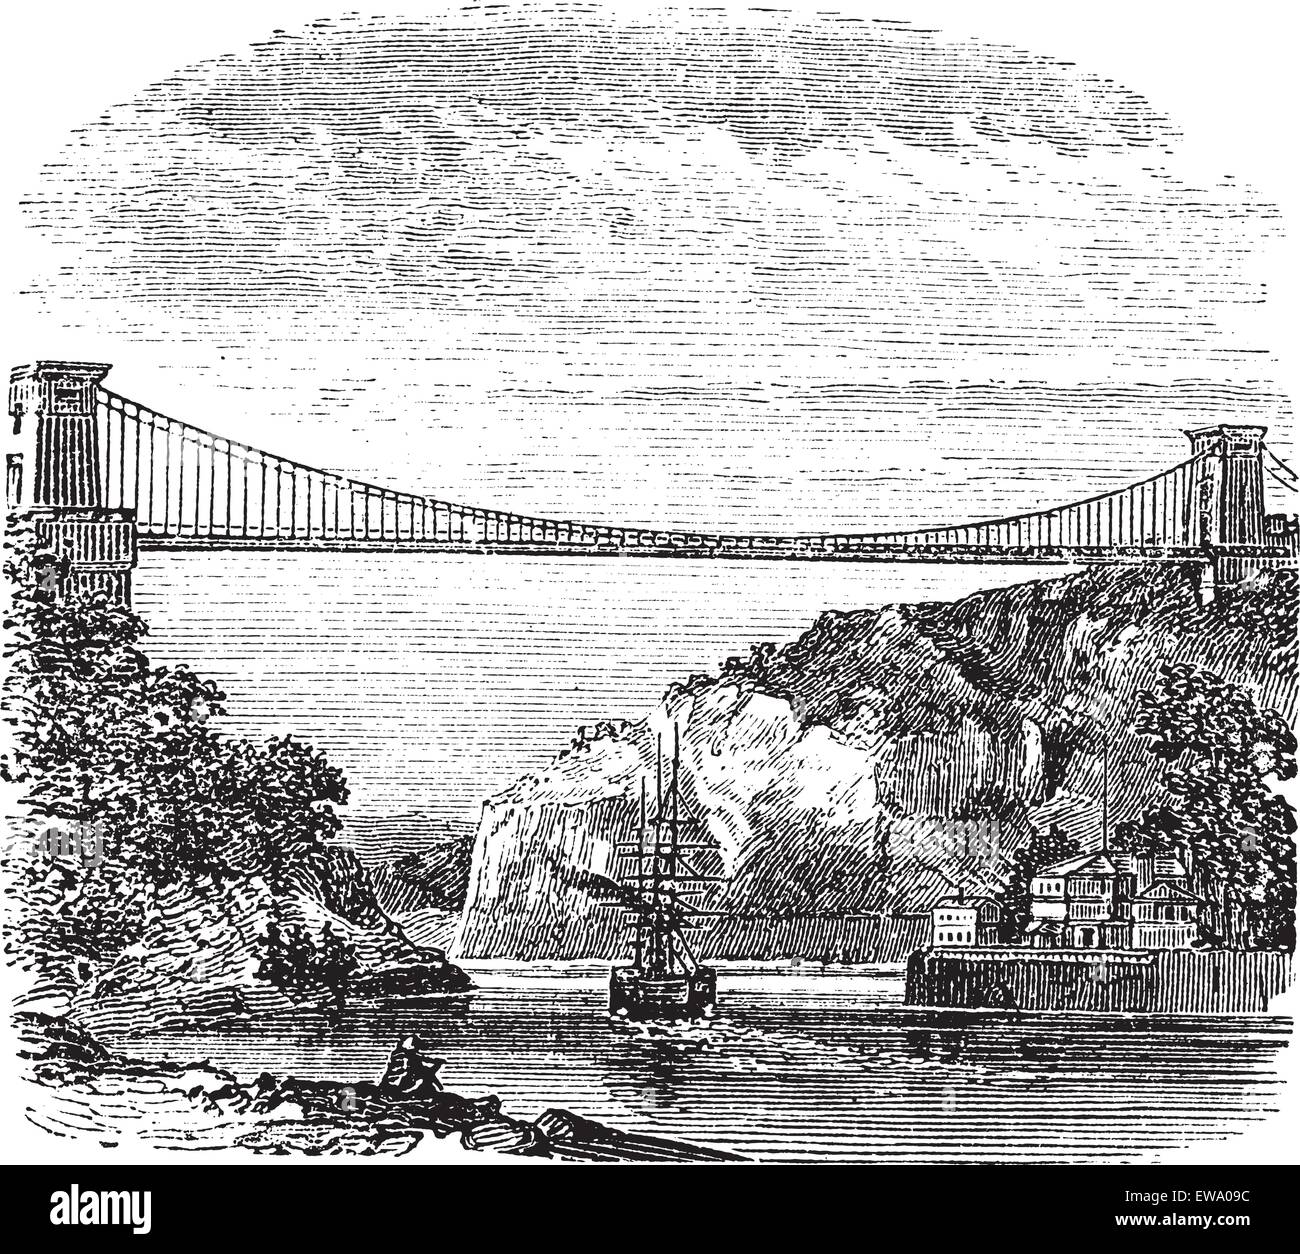 Clifton Suspension Bridge, Clifton, Bristol, Leigh Woods, North Somerset, England, in den 1890er Jahren, vintage Gravur. Alte eingravierte Darstellung der Clifton Suspension Bridge. Stock Vektor